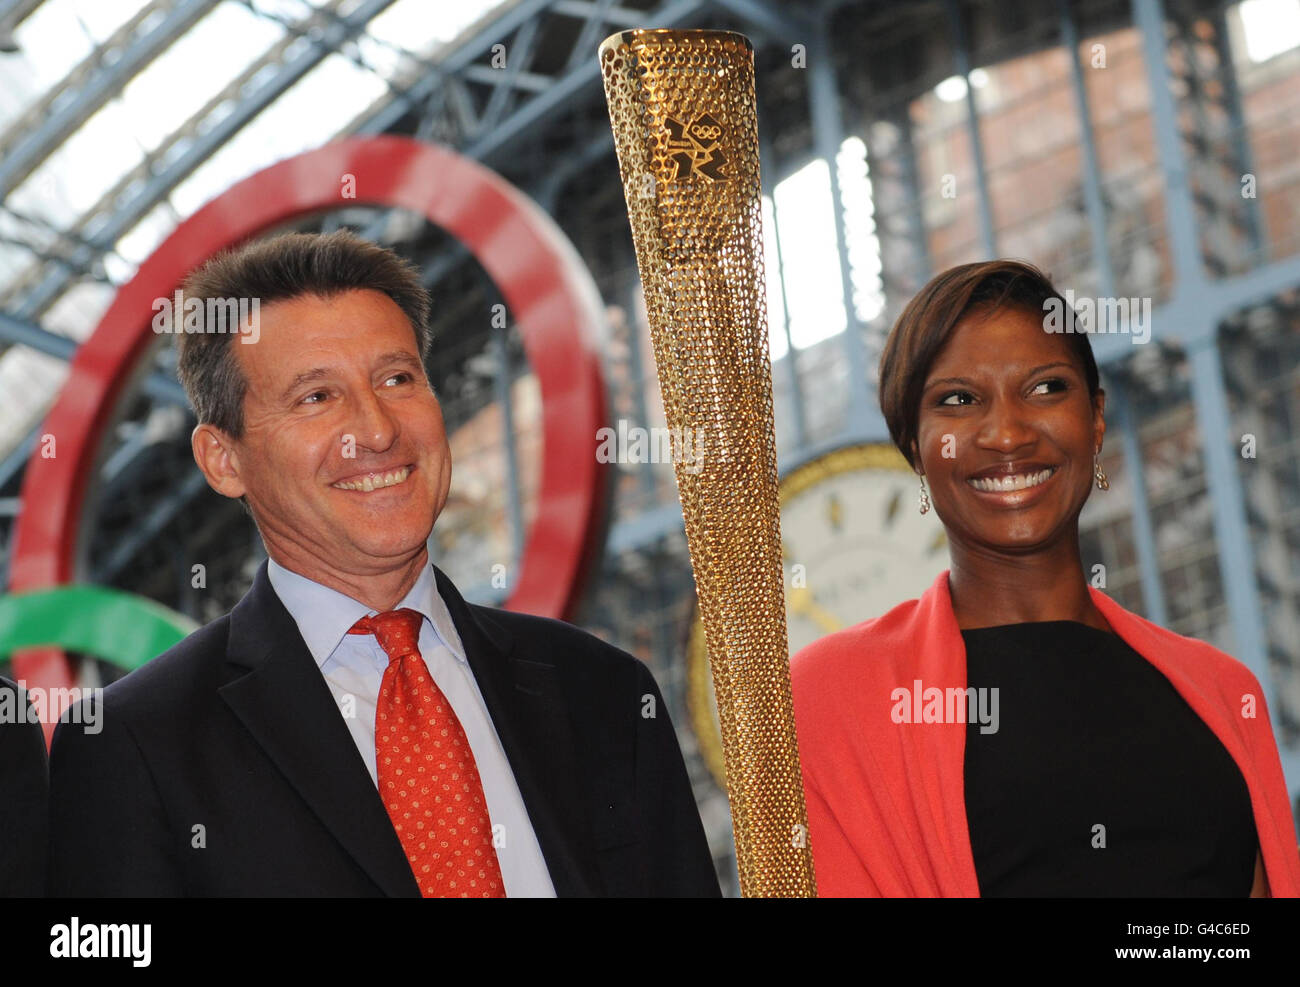 Lord Coe, Vorsitzender von London 2012, und die ehemalige Olympiasiegerin Denise Lewis starten die olympische Flamme, die neue goldene Fackel, die von den 8,000 Läufern auf der Londoner Fackelstaffel 2012 getragen wird. Am Bahnhof St. Pancras in London. Stockfoto